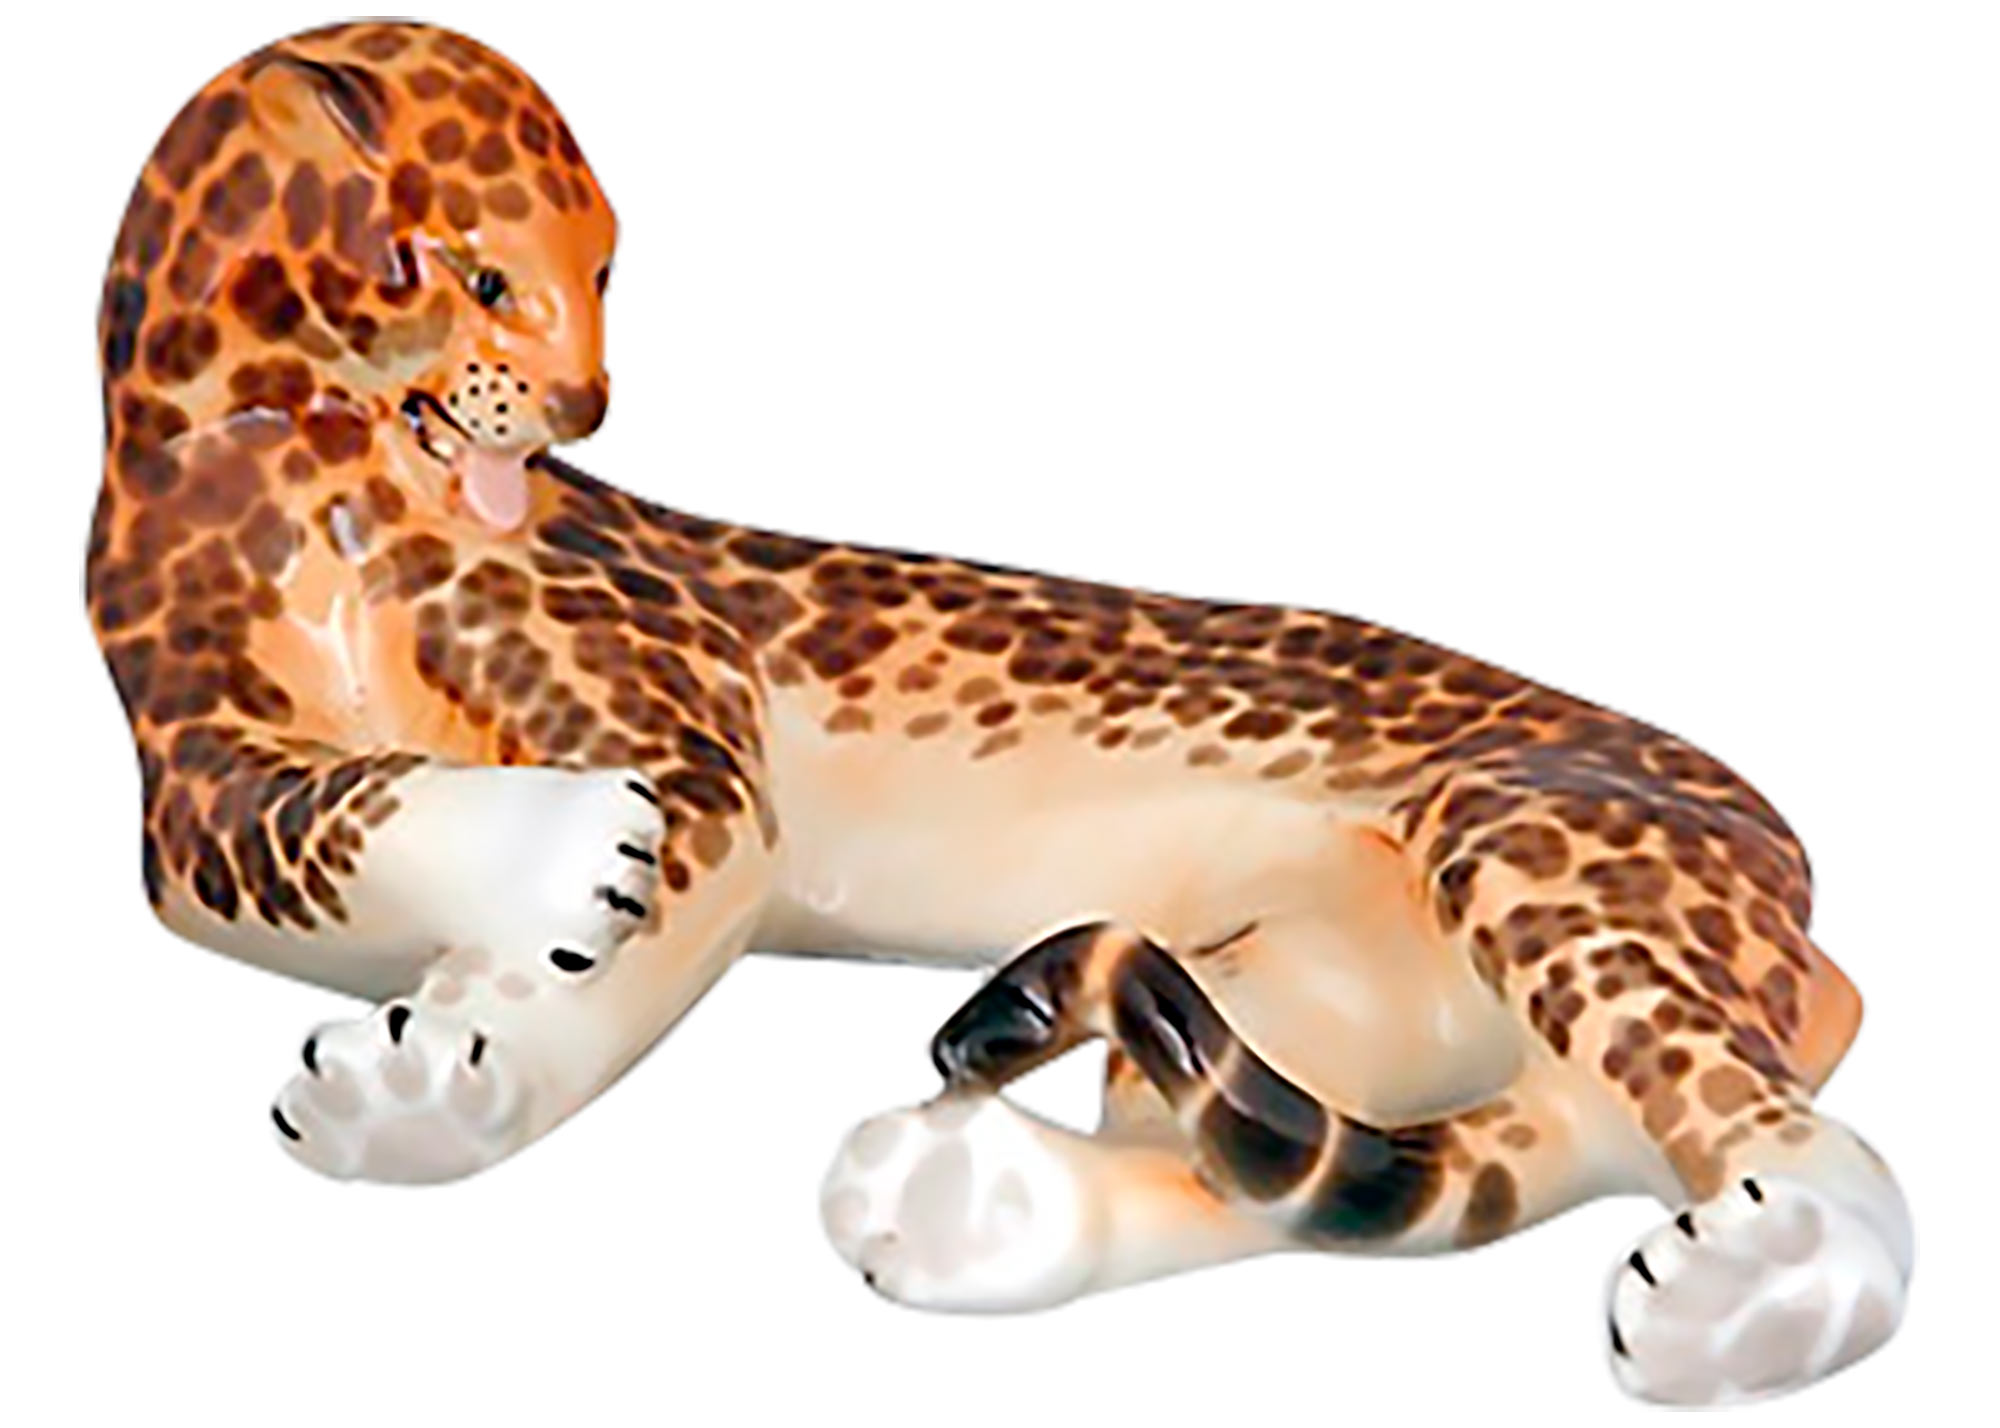 Buy Porcelain Jaguar Figurine at GoldenCockerel.com